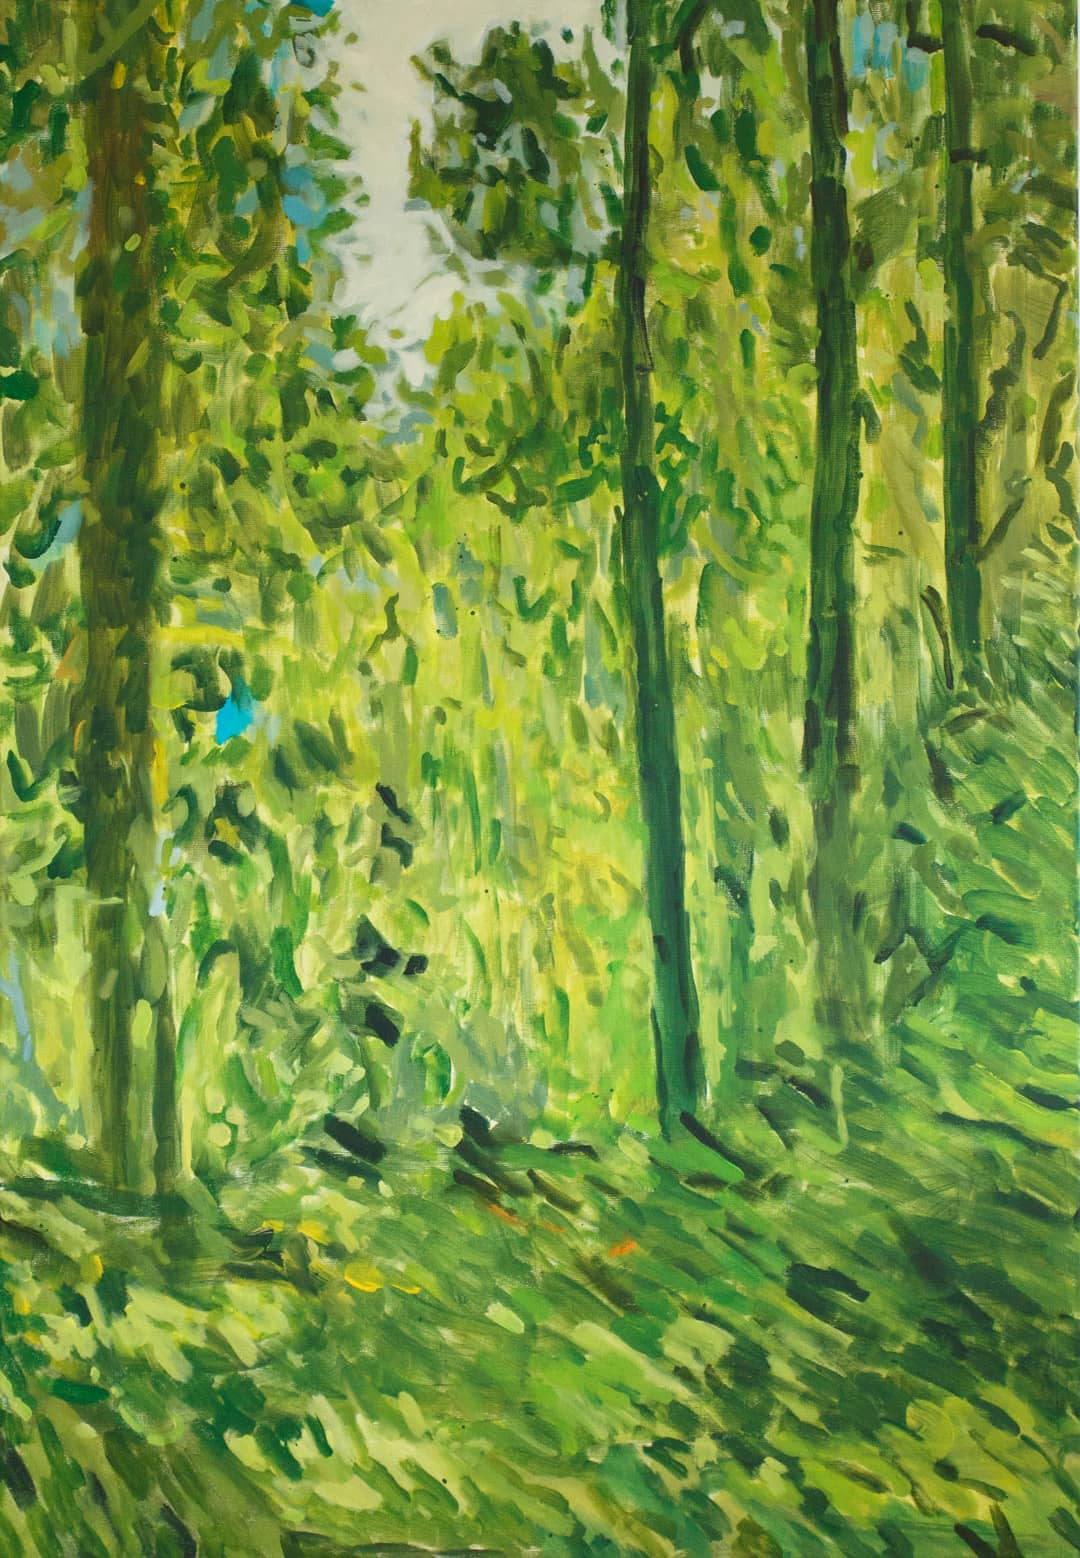 Grünes Blätterdickicht im Wald bei Nürnberg als impressionistische Landschaftsmalerei in Acryl auf Leinwand